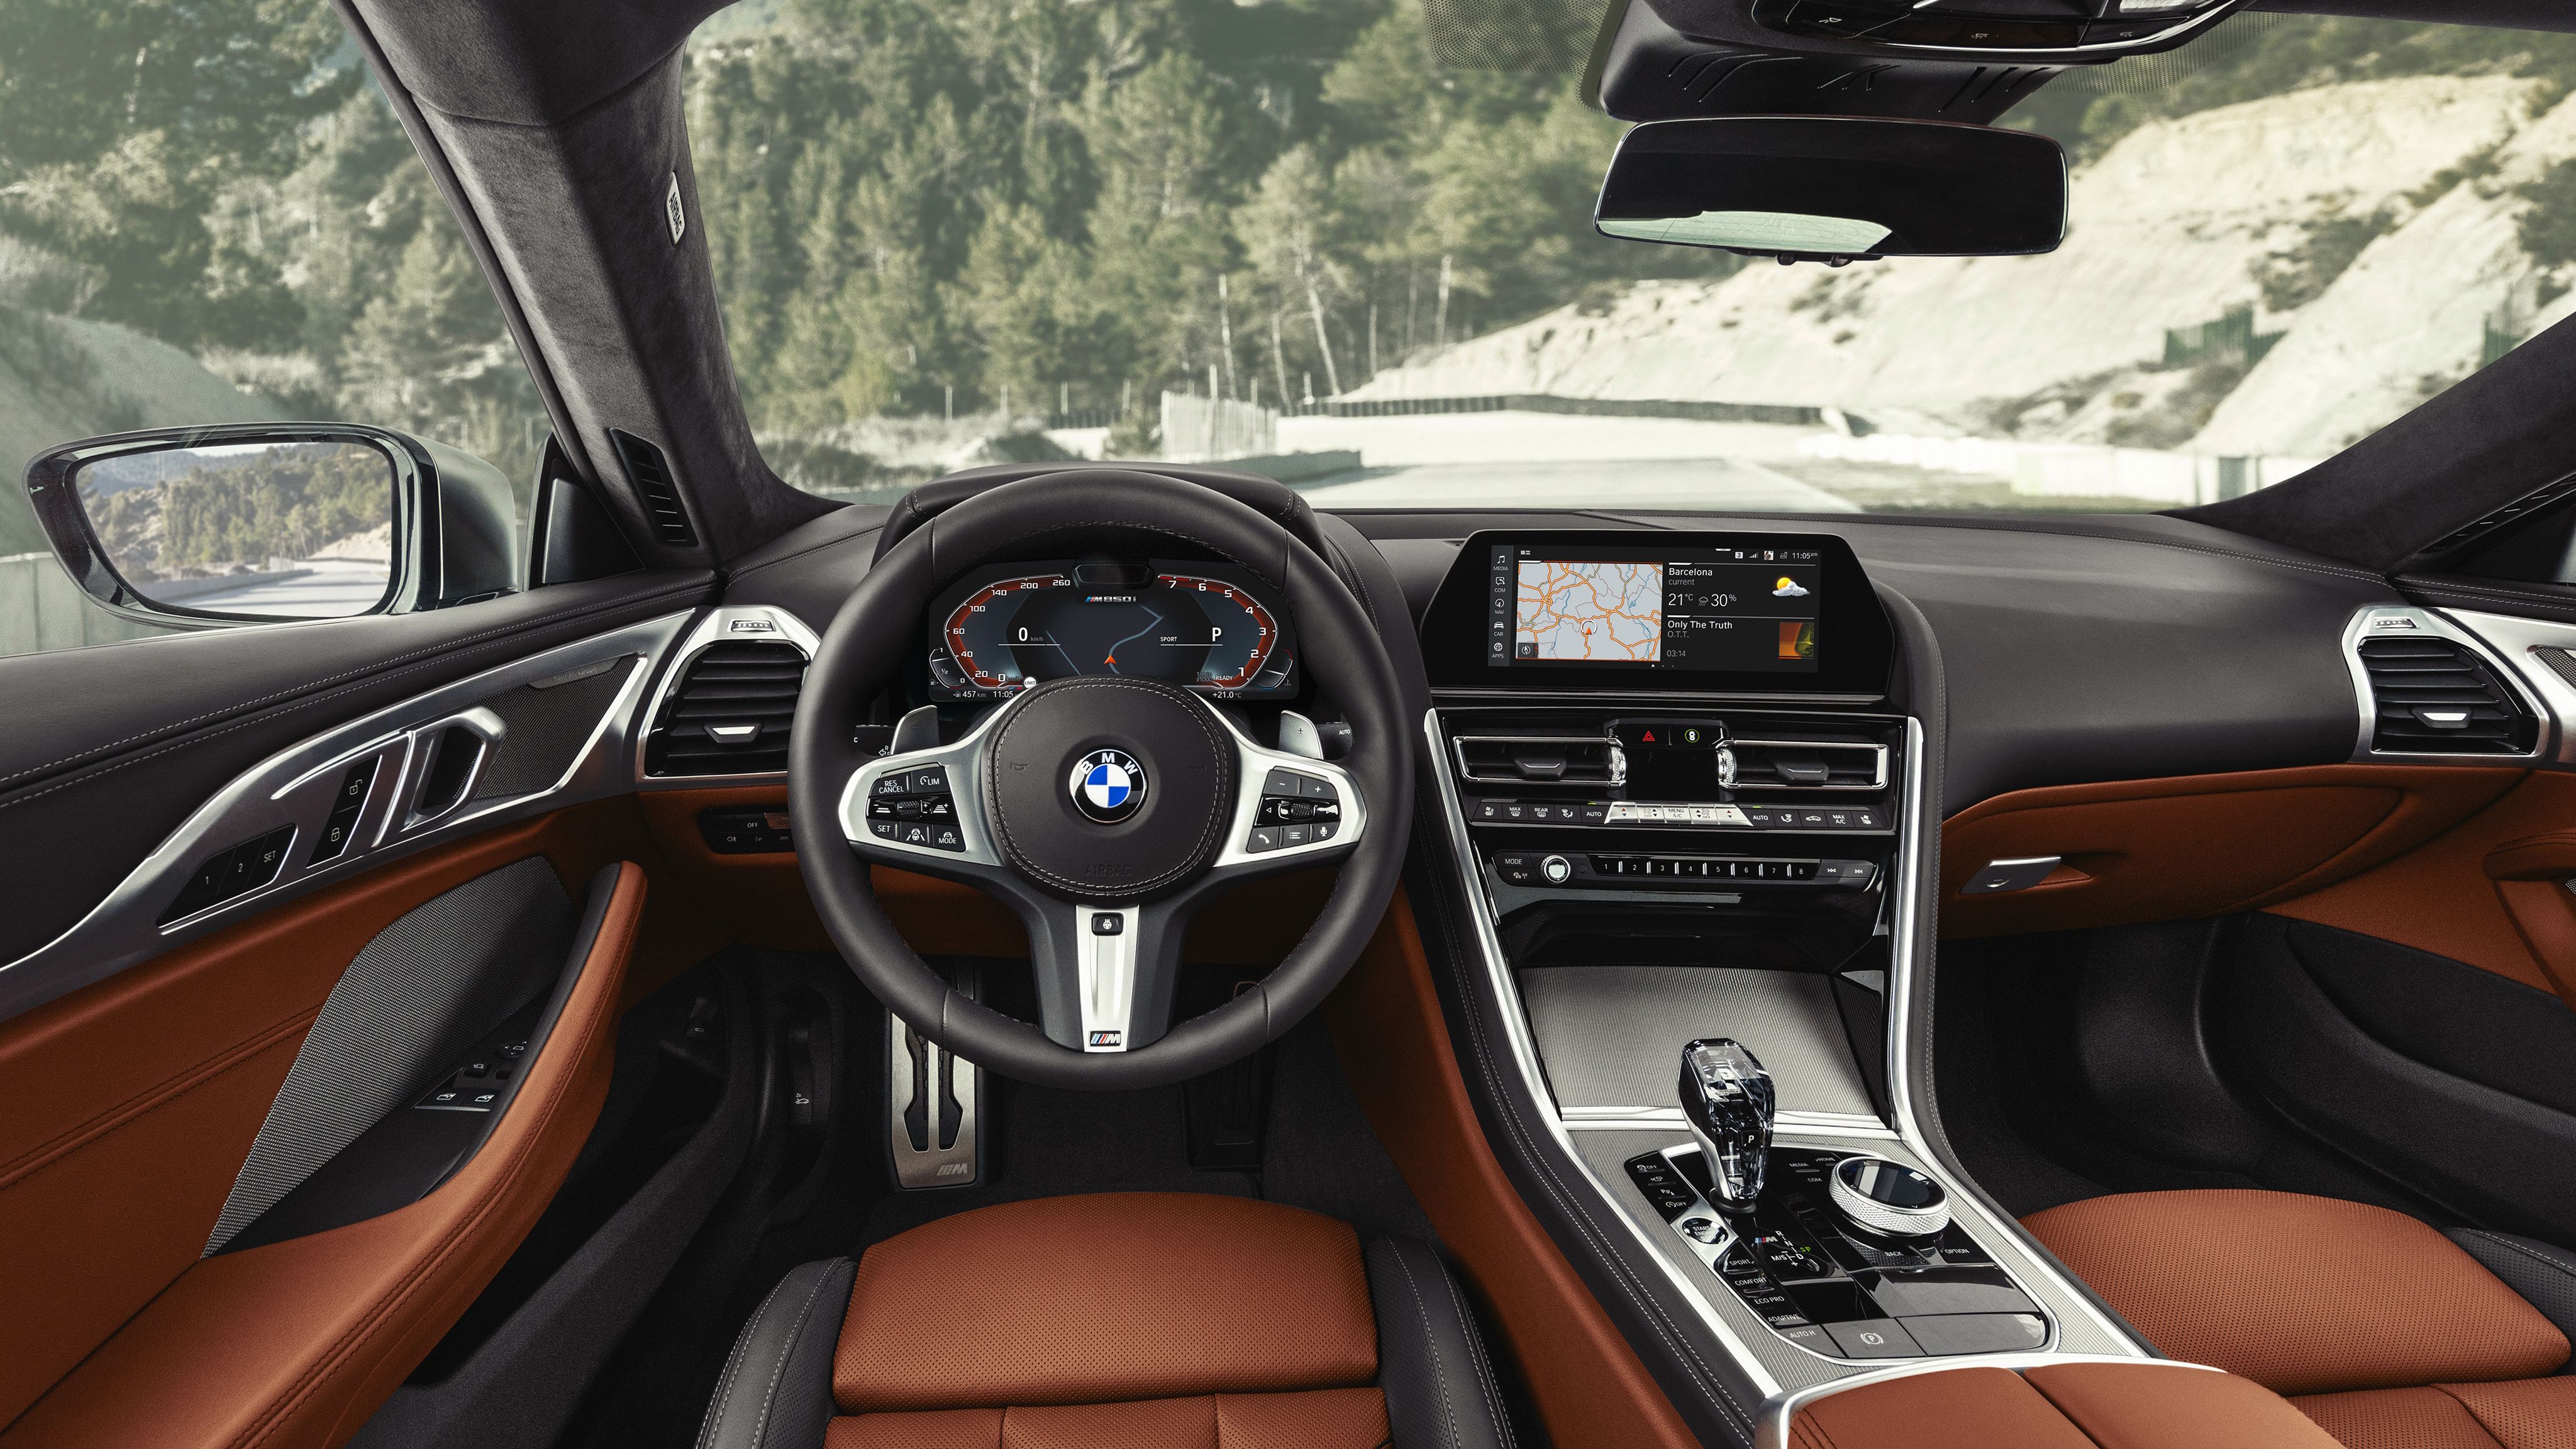 BMW M850i xDrive 2018 4K Interior Wallpaper. HD Car Wallpaper